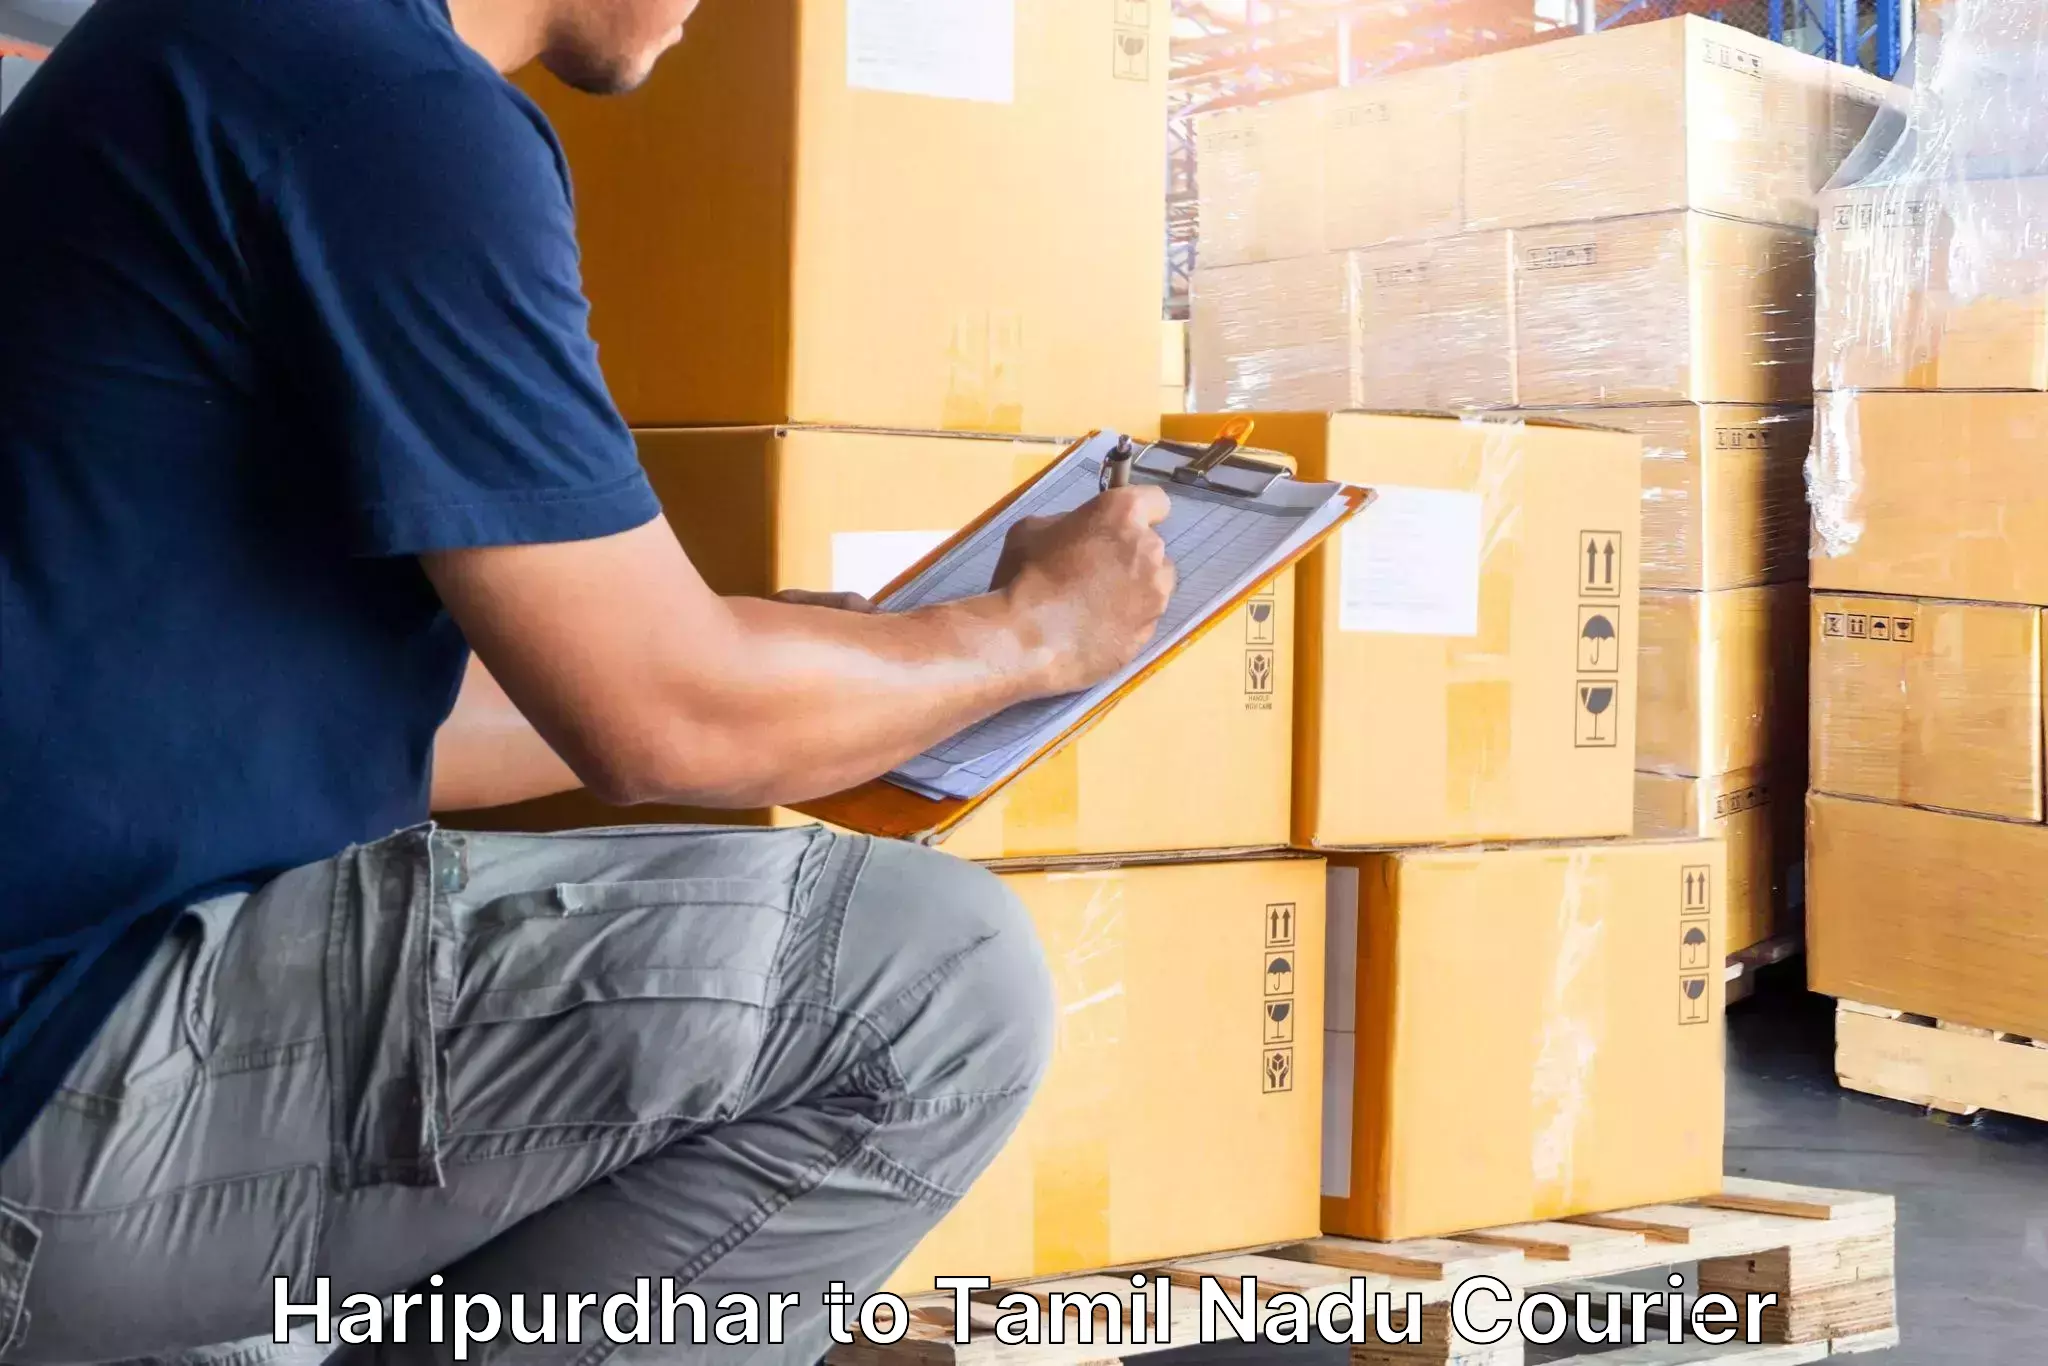 Professional furniture moving Haripurdhar to Thiruvadanai